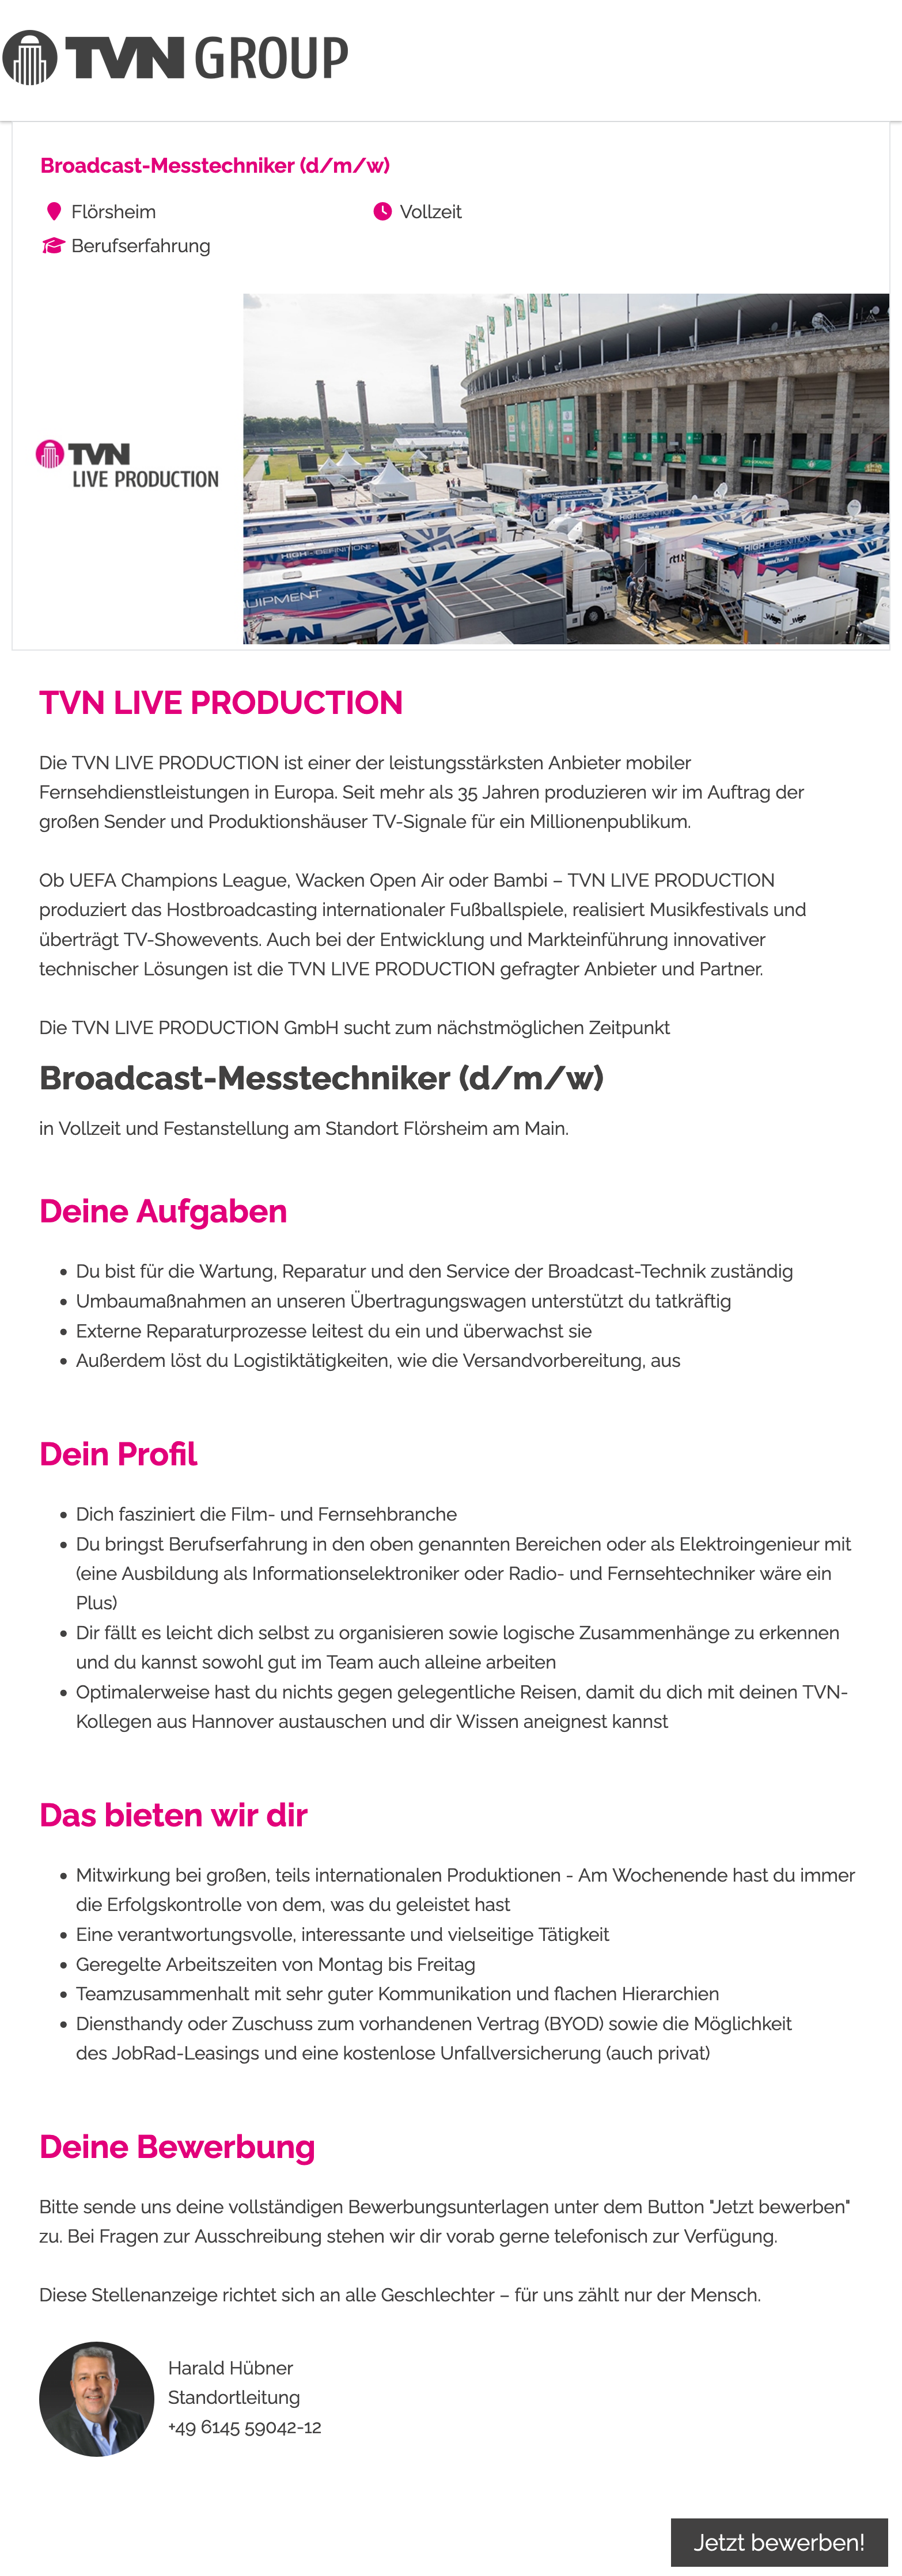 Broadcast-Messtechniker (d/m/w)